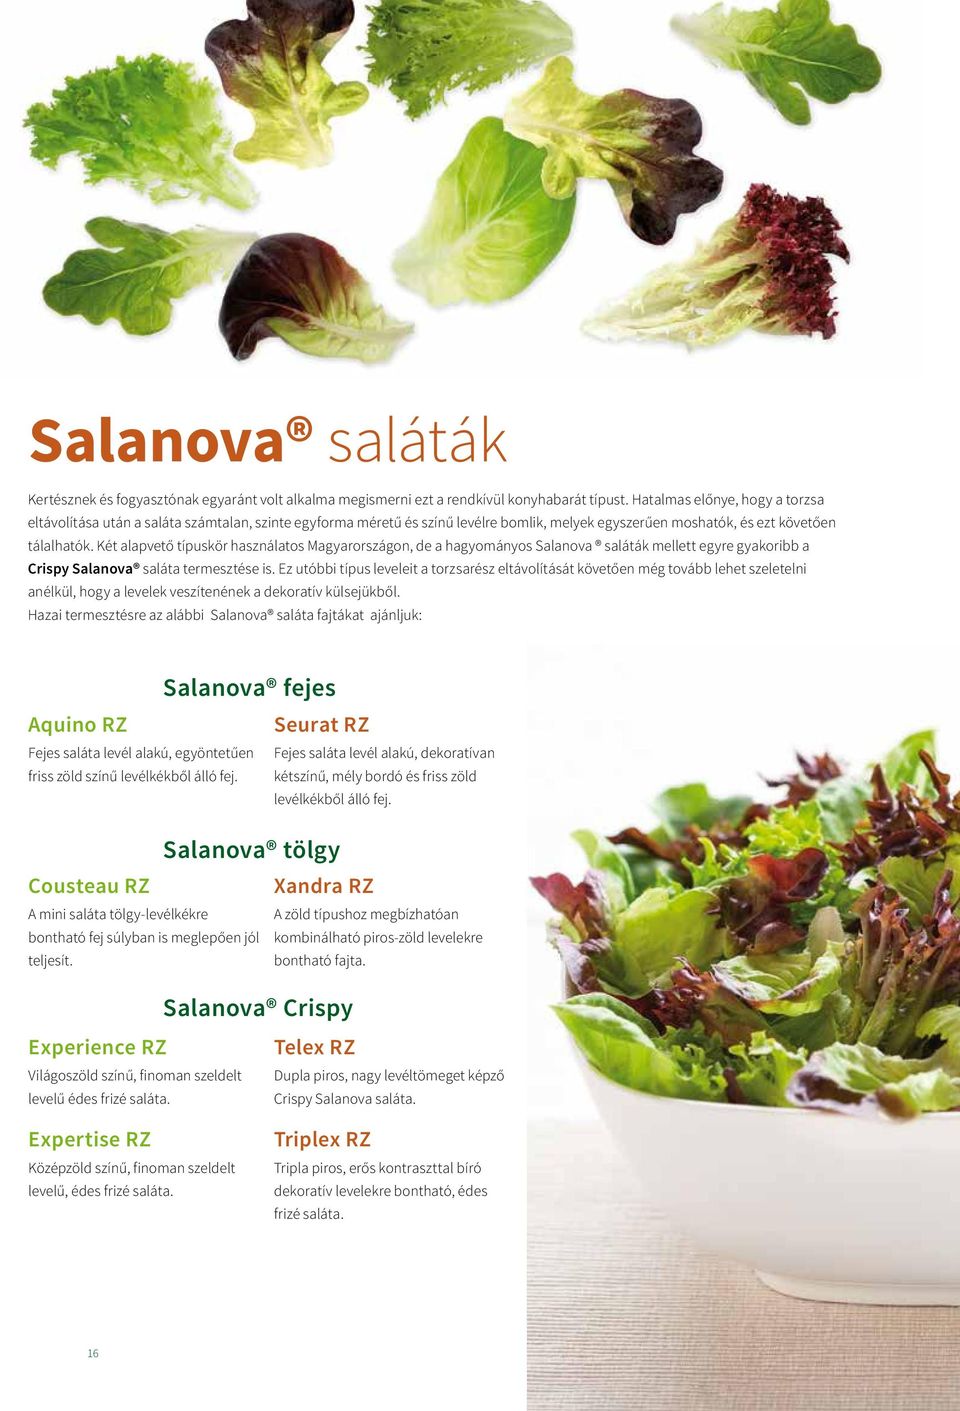 Két alapvető típuskör használatos Magyarországon, de a hagyományos Salanova saláták mellett egyre gyakoribb a Crispy Salanova saláta termesztése is.